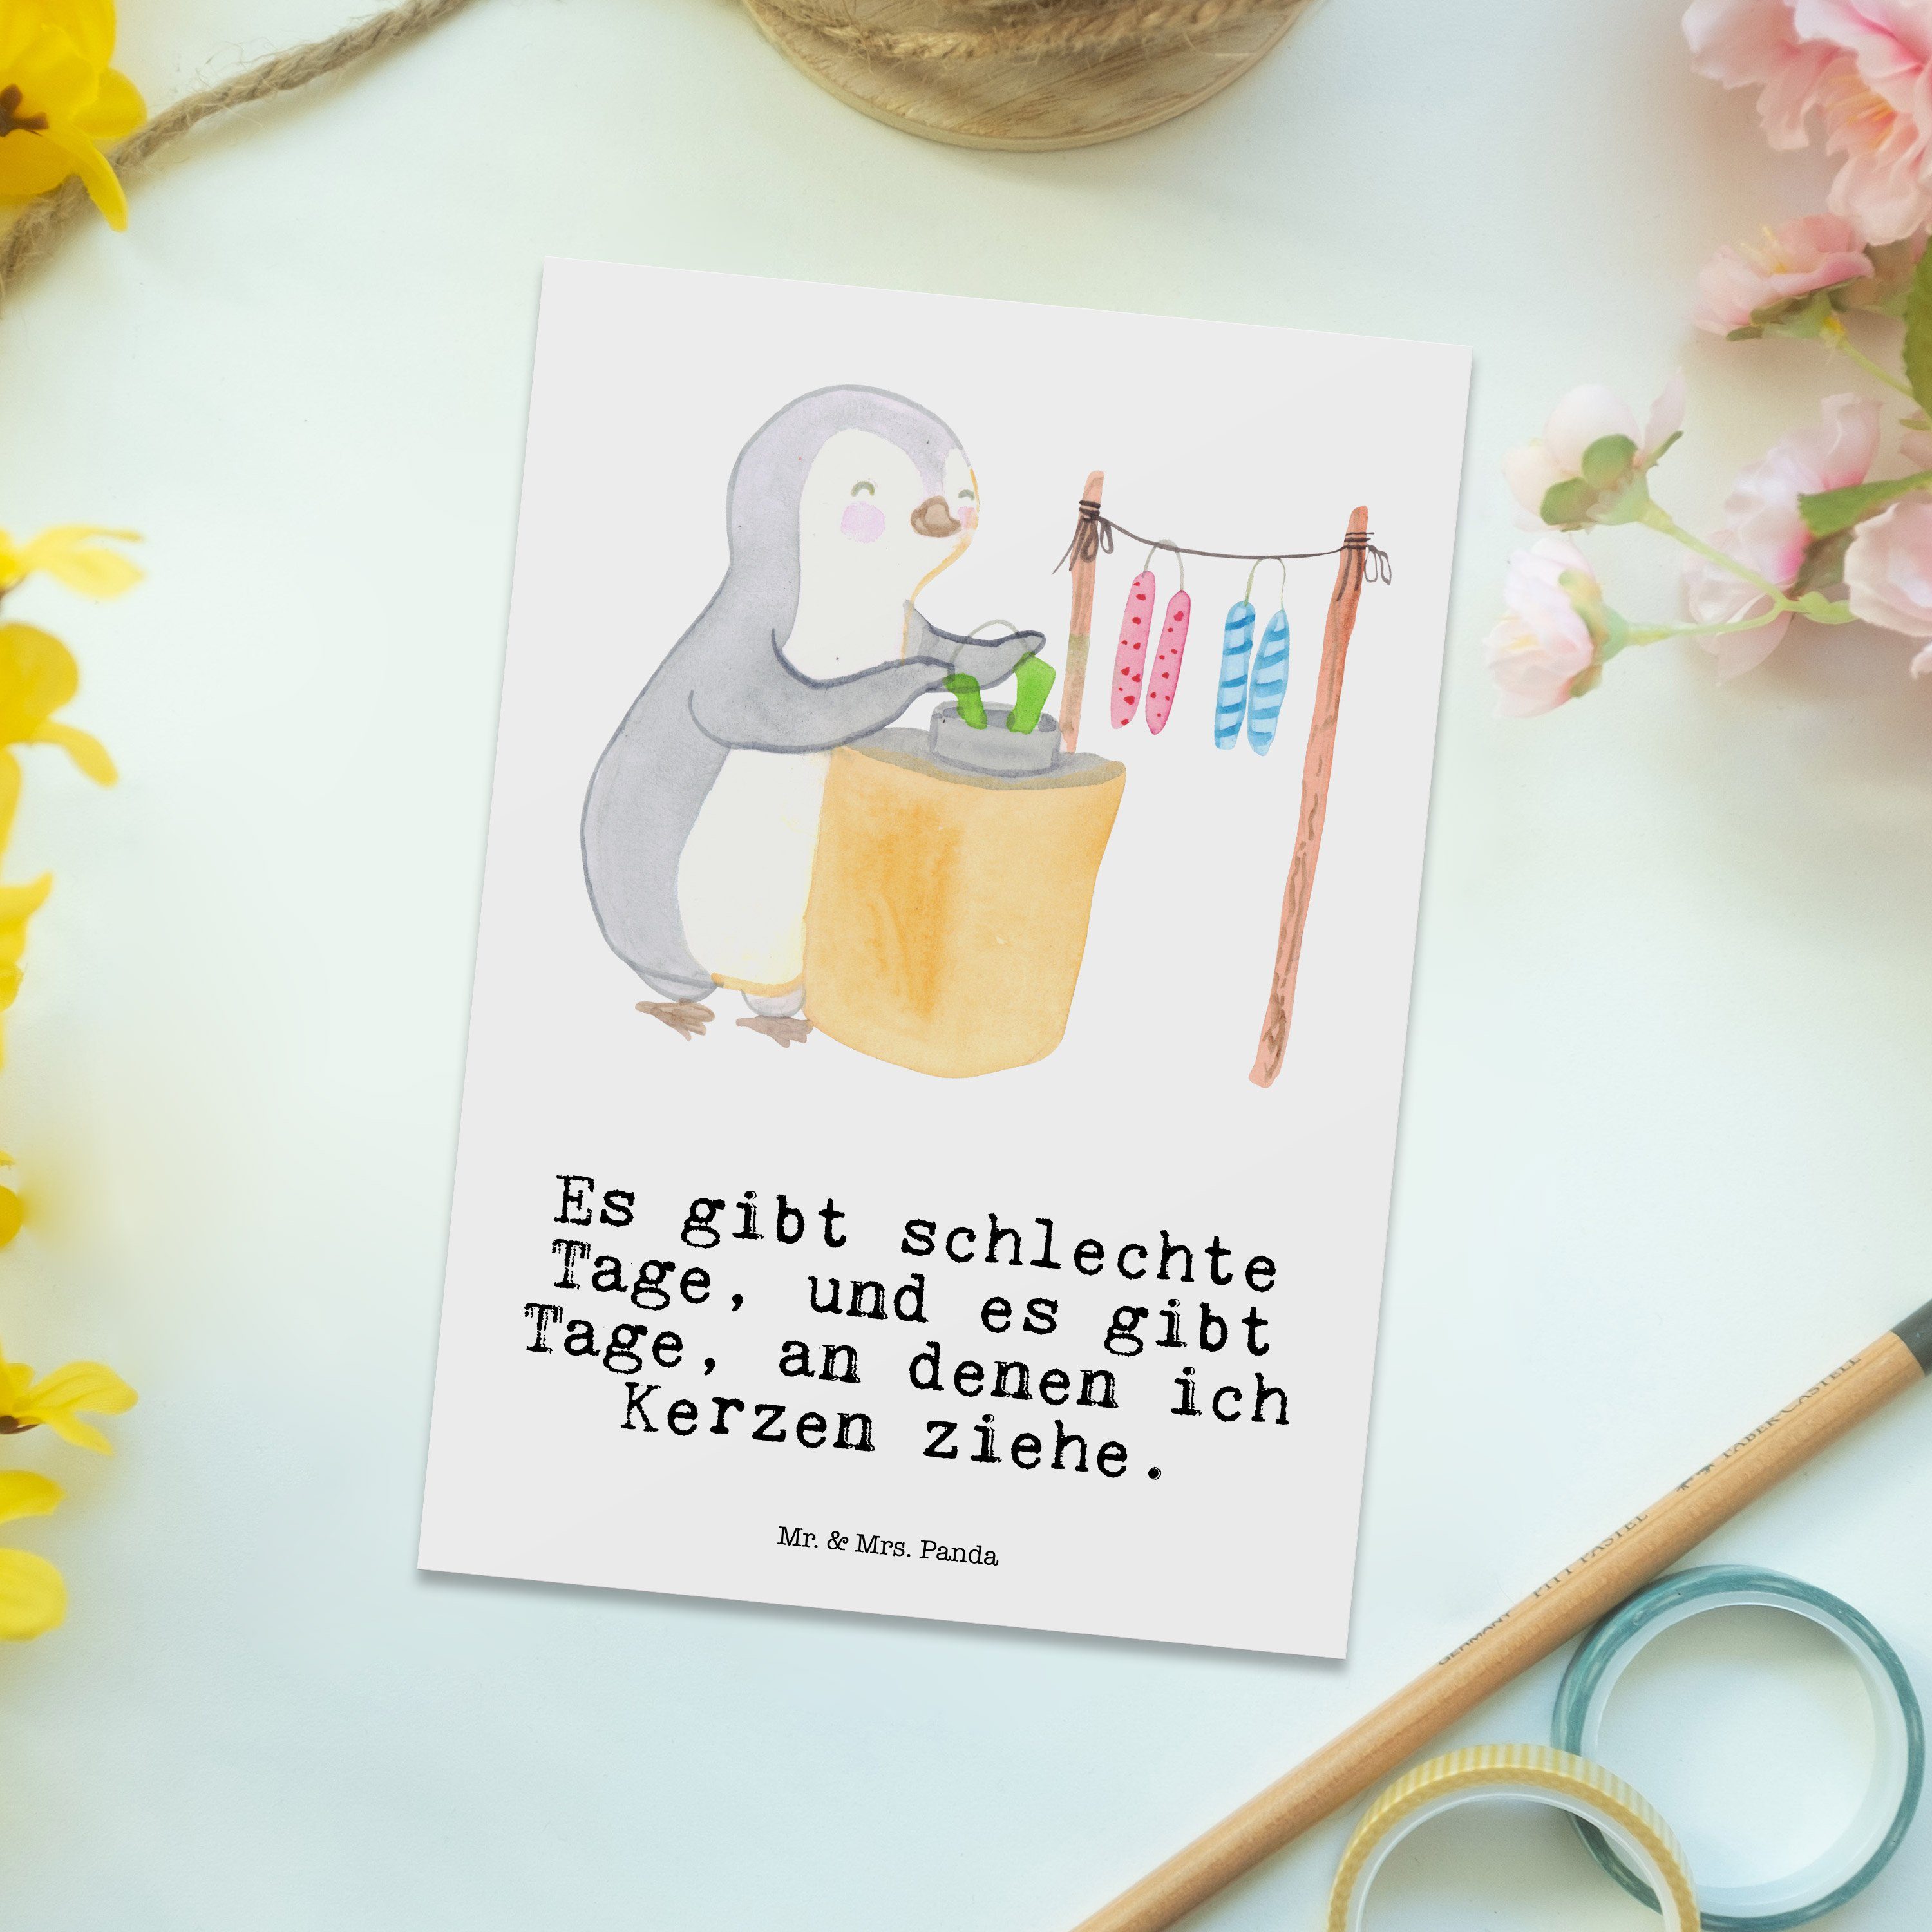 Mr. & Mrs. Panda Postkarte Danke Kerzenziehen Geschenk, Pinguin - Weiß - Einladungskarte, Tage